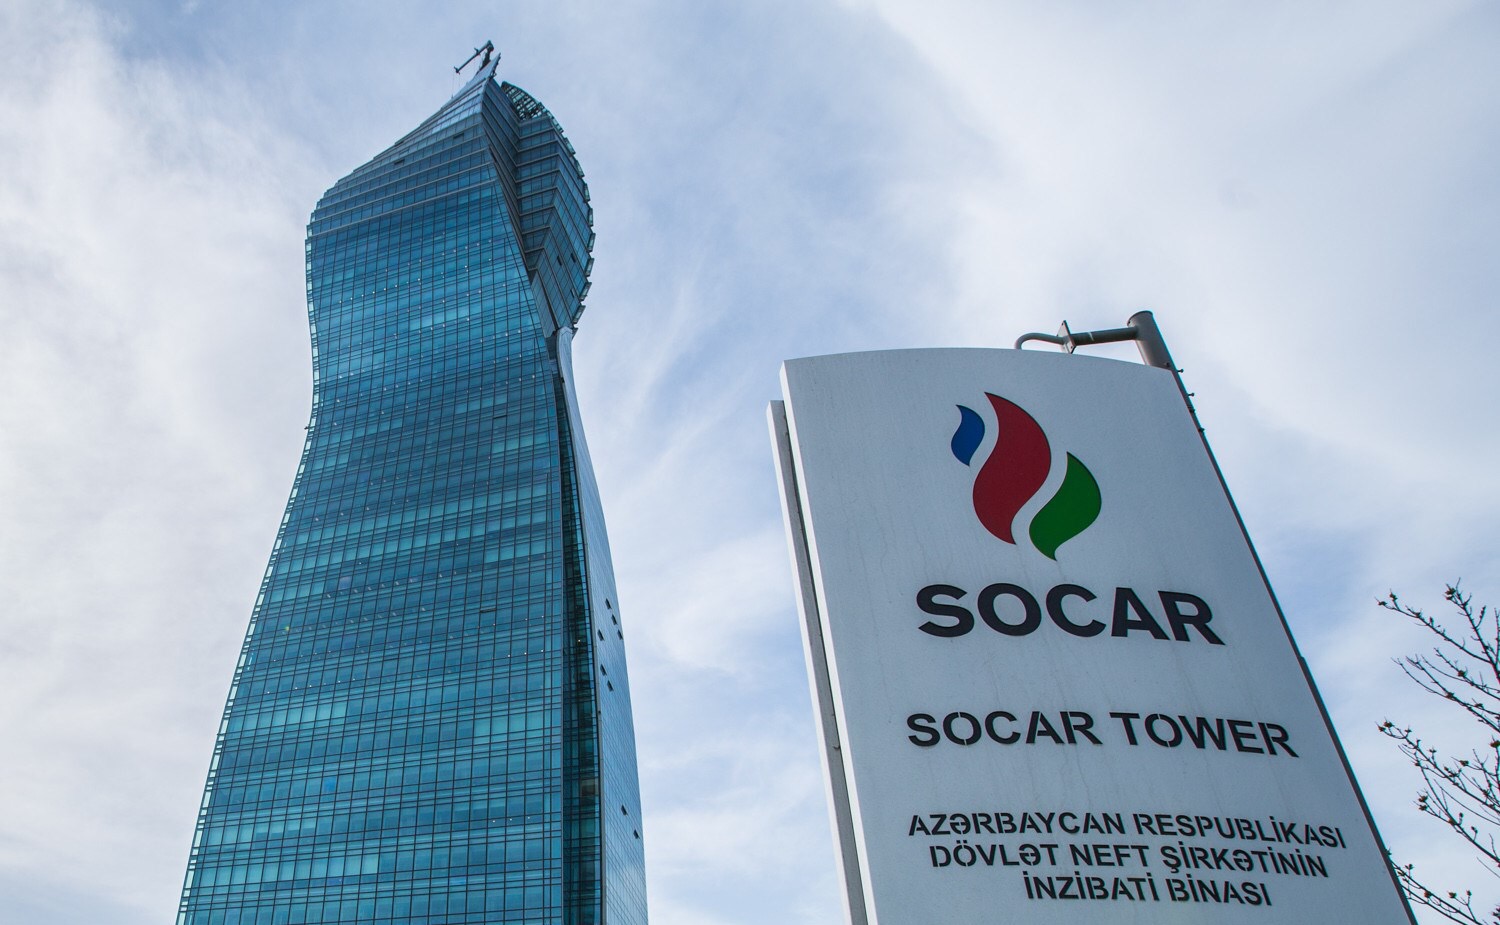 Грузия закупит у азербайджанского SOCAR 200 млн куб «социального» газа со скидкой